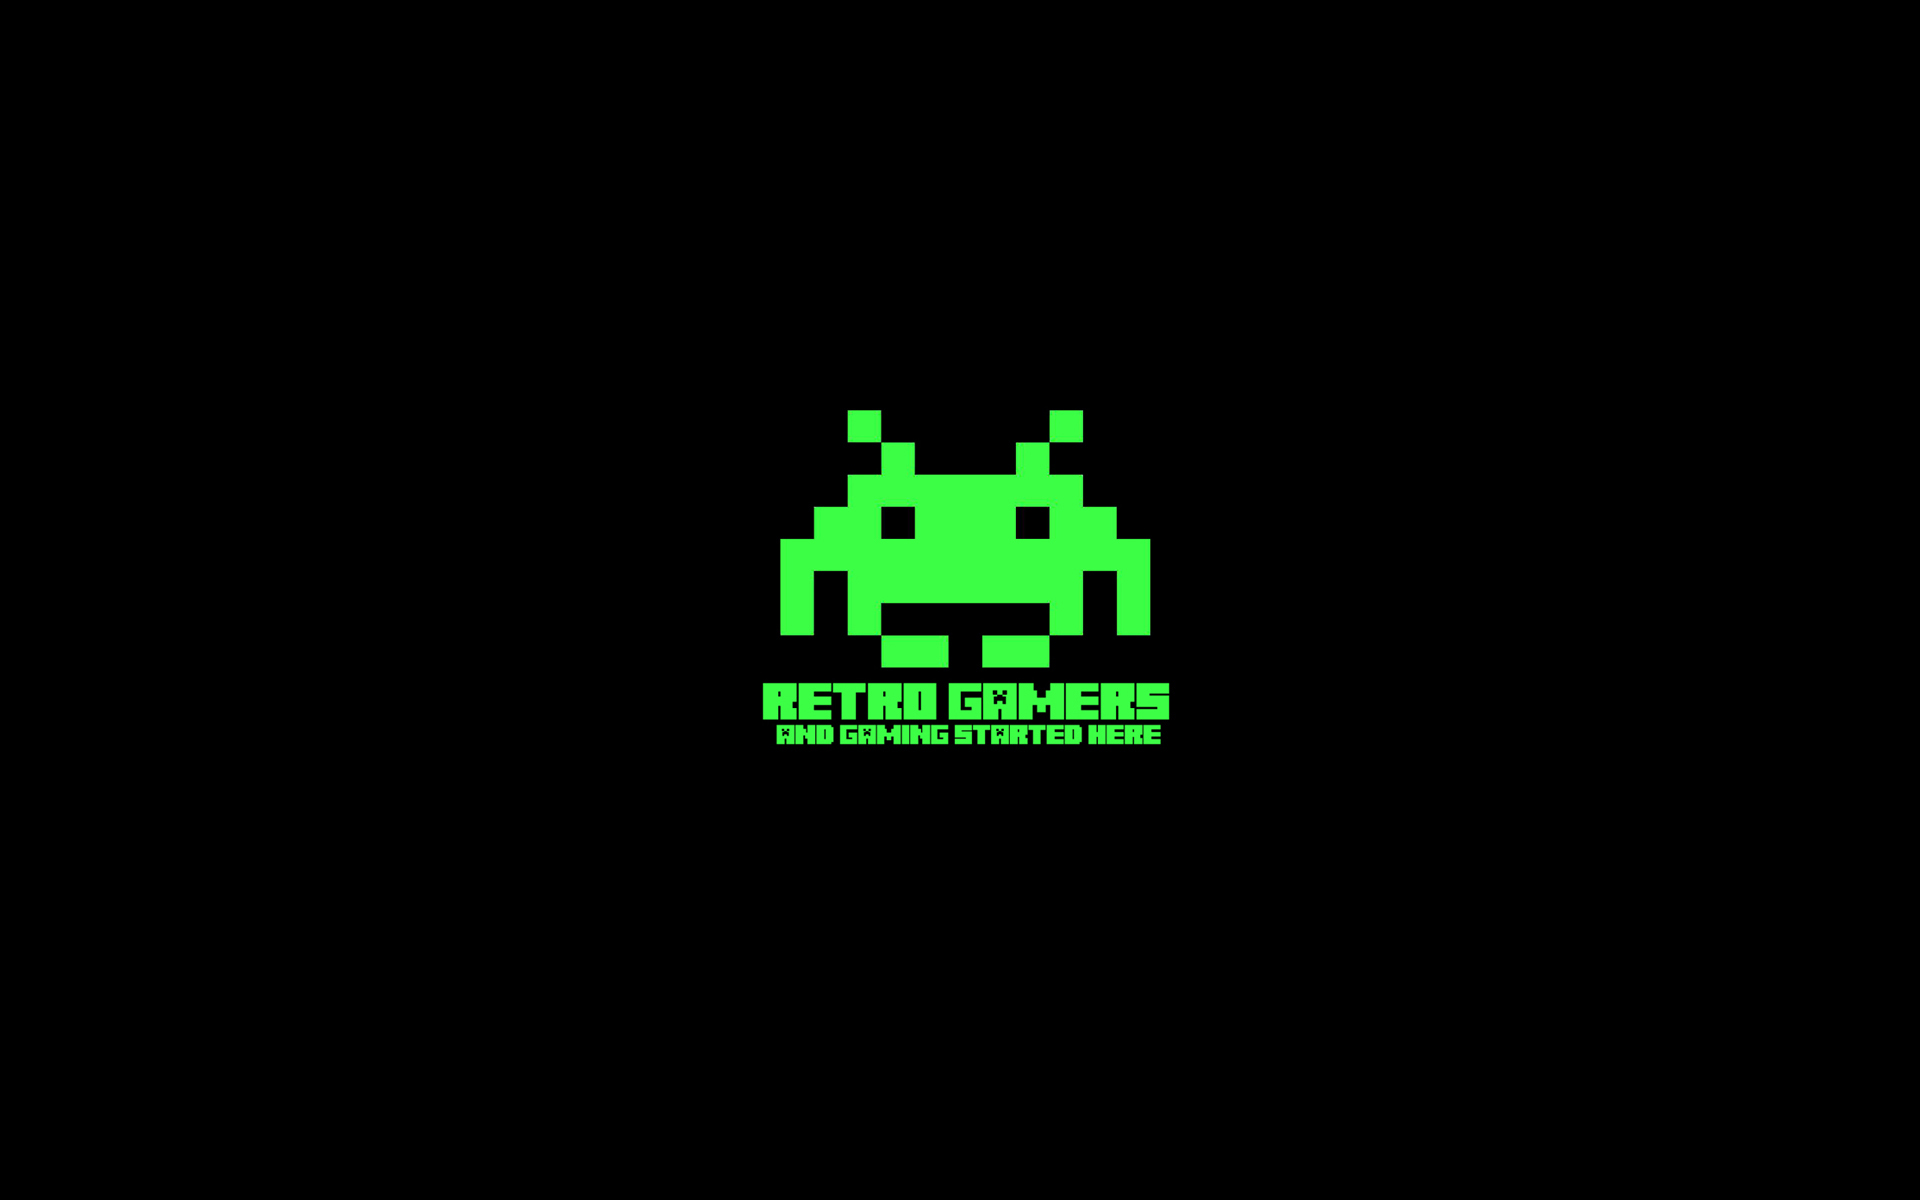 Экран 8 бит. 1 Битное изображение. Логотипы 8 бит игр. Space Invaders 8 bit.